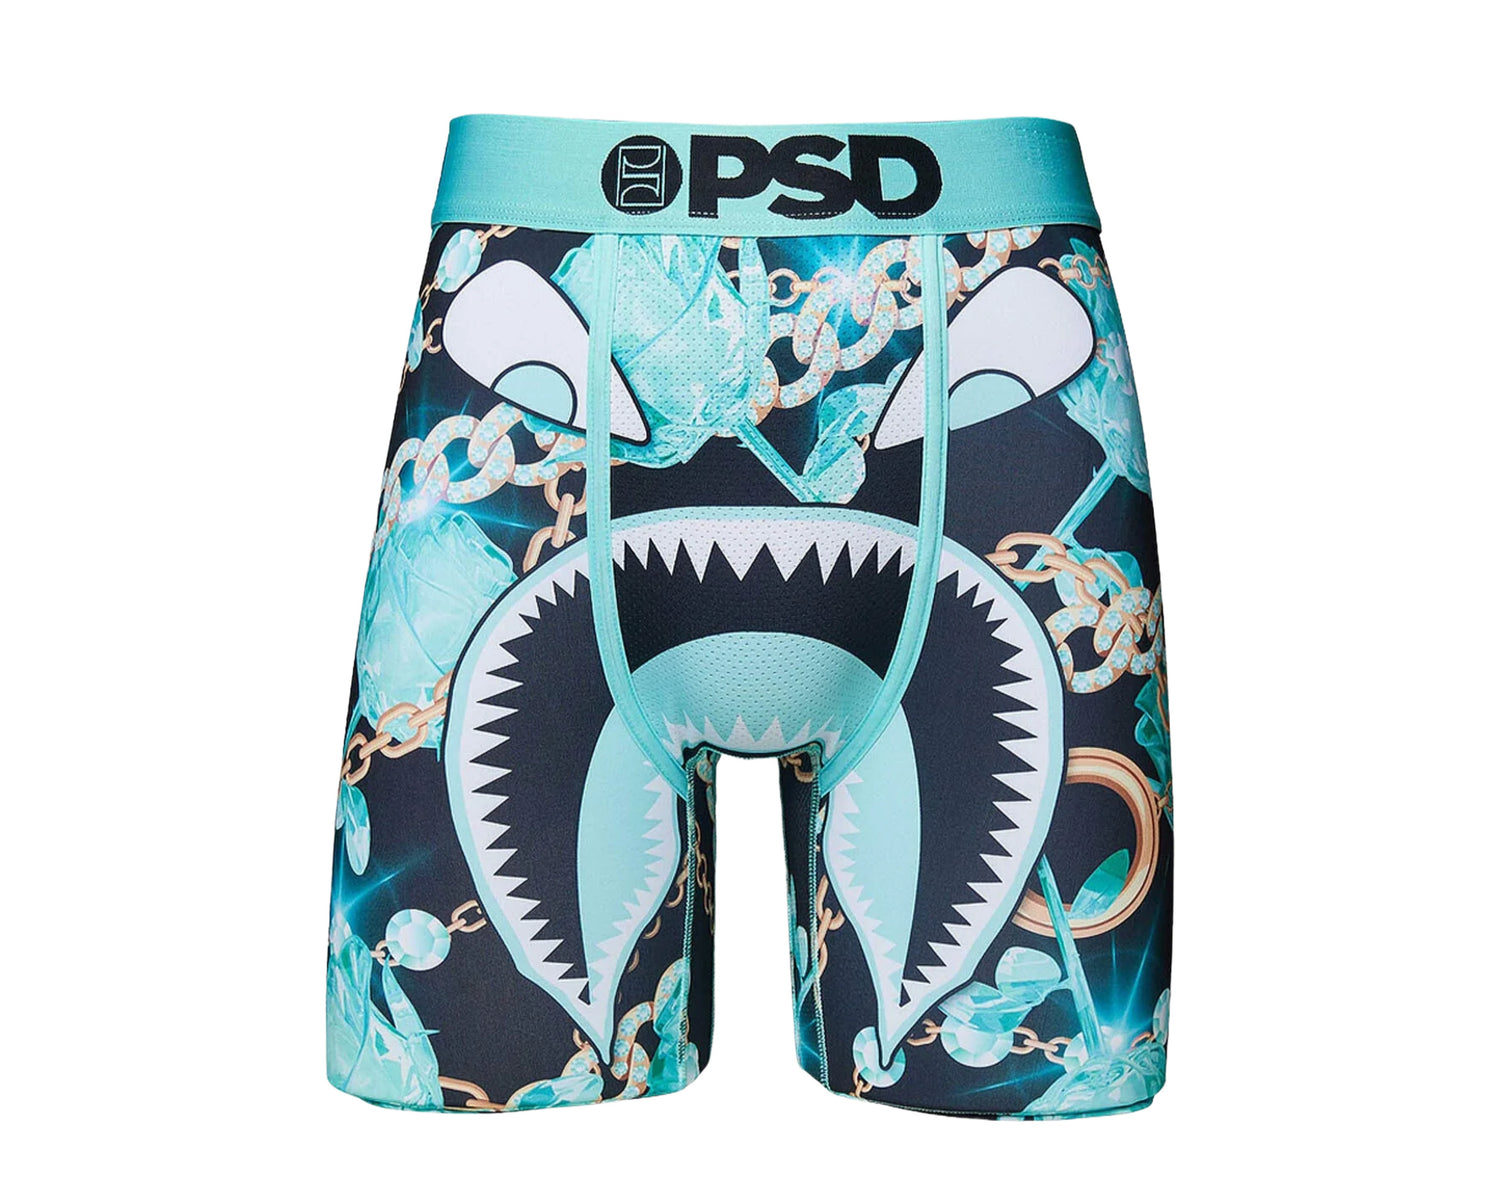 PSD Warface & CO. Boxer Briefs Men's Underwear